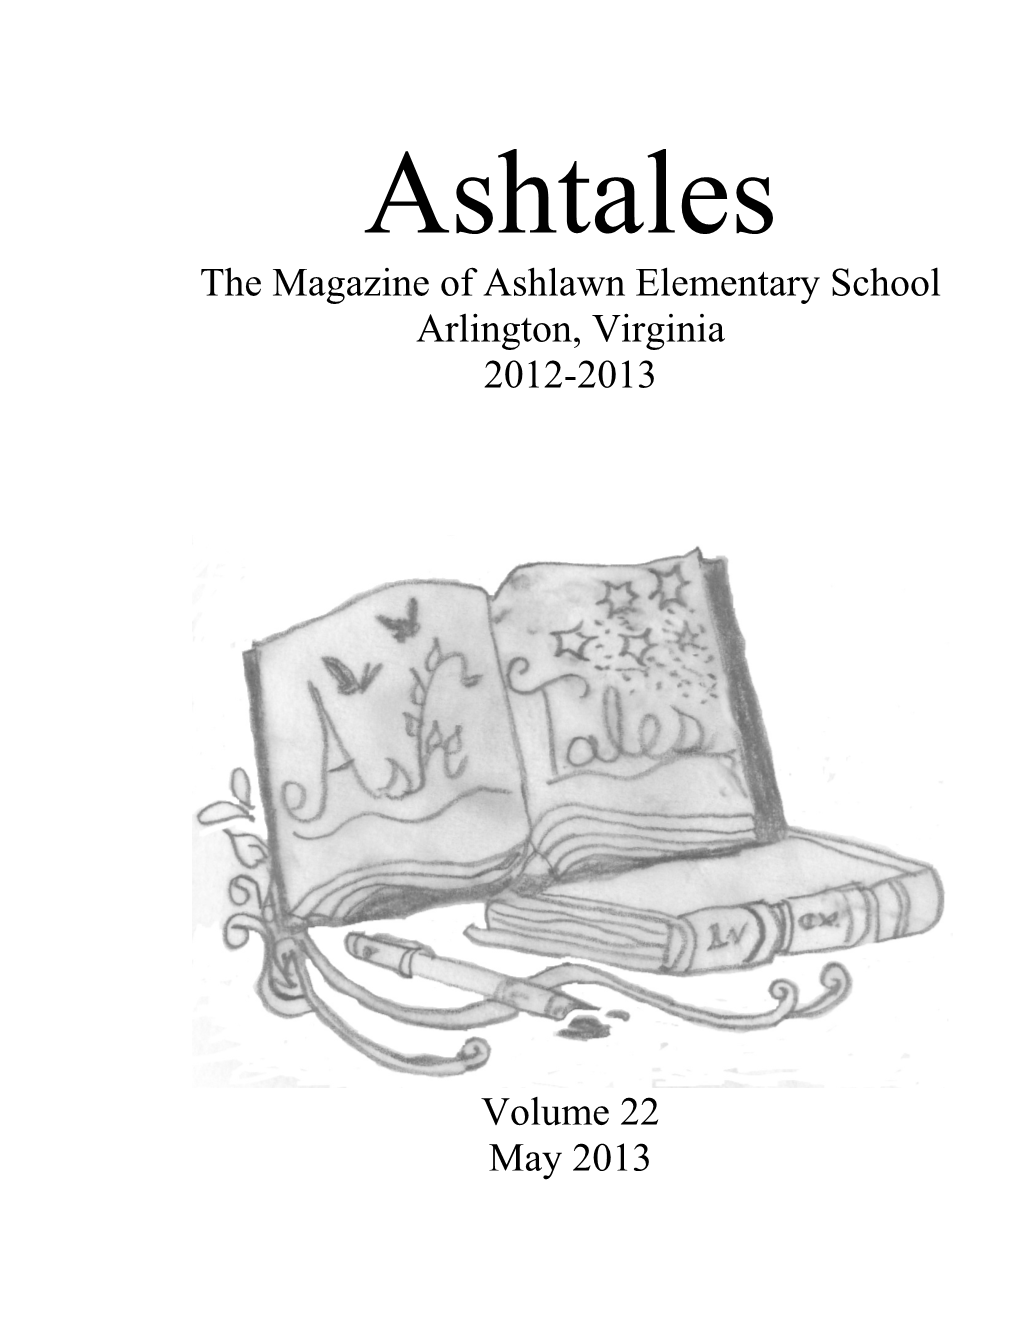 Ashtales 2012-2013